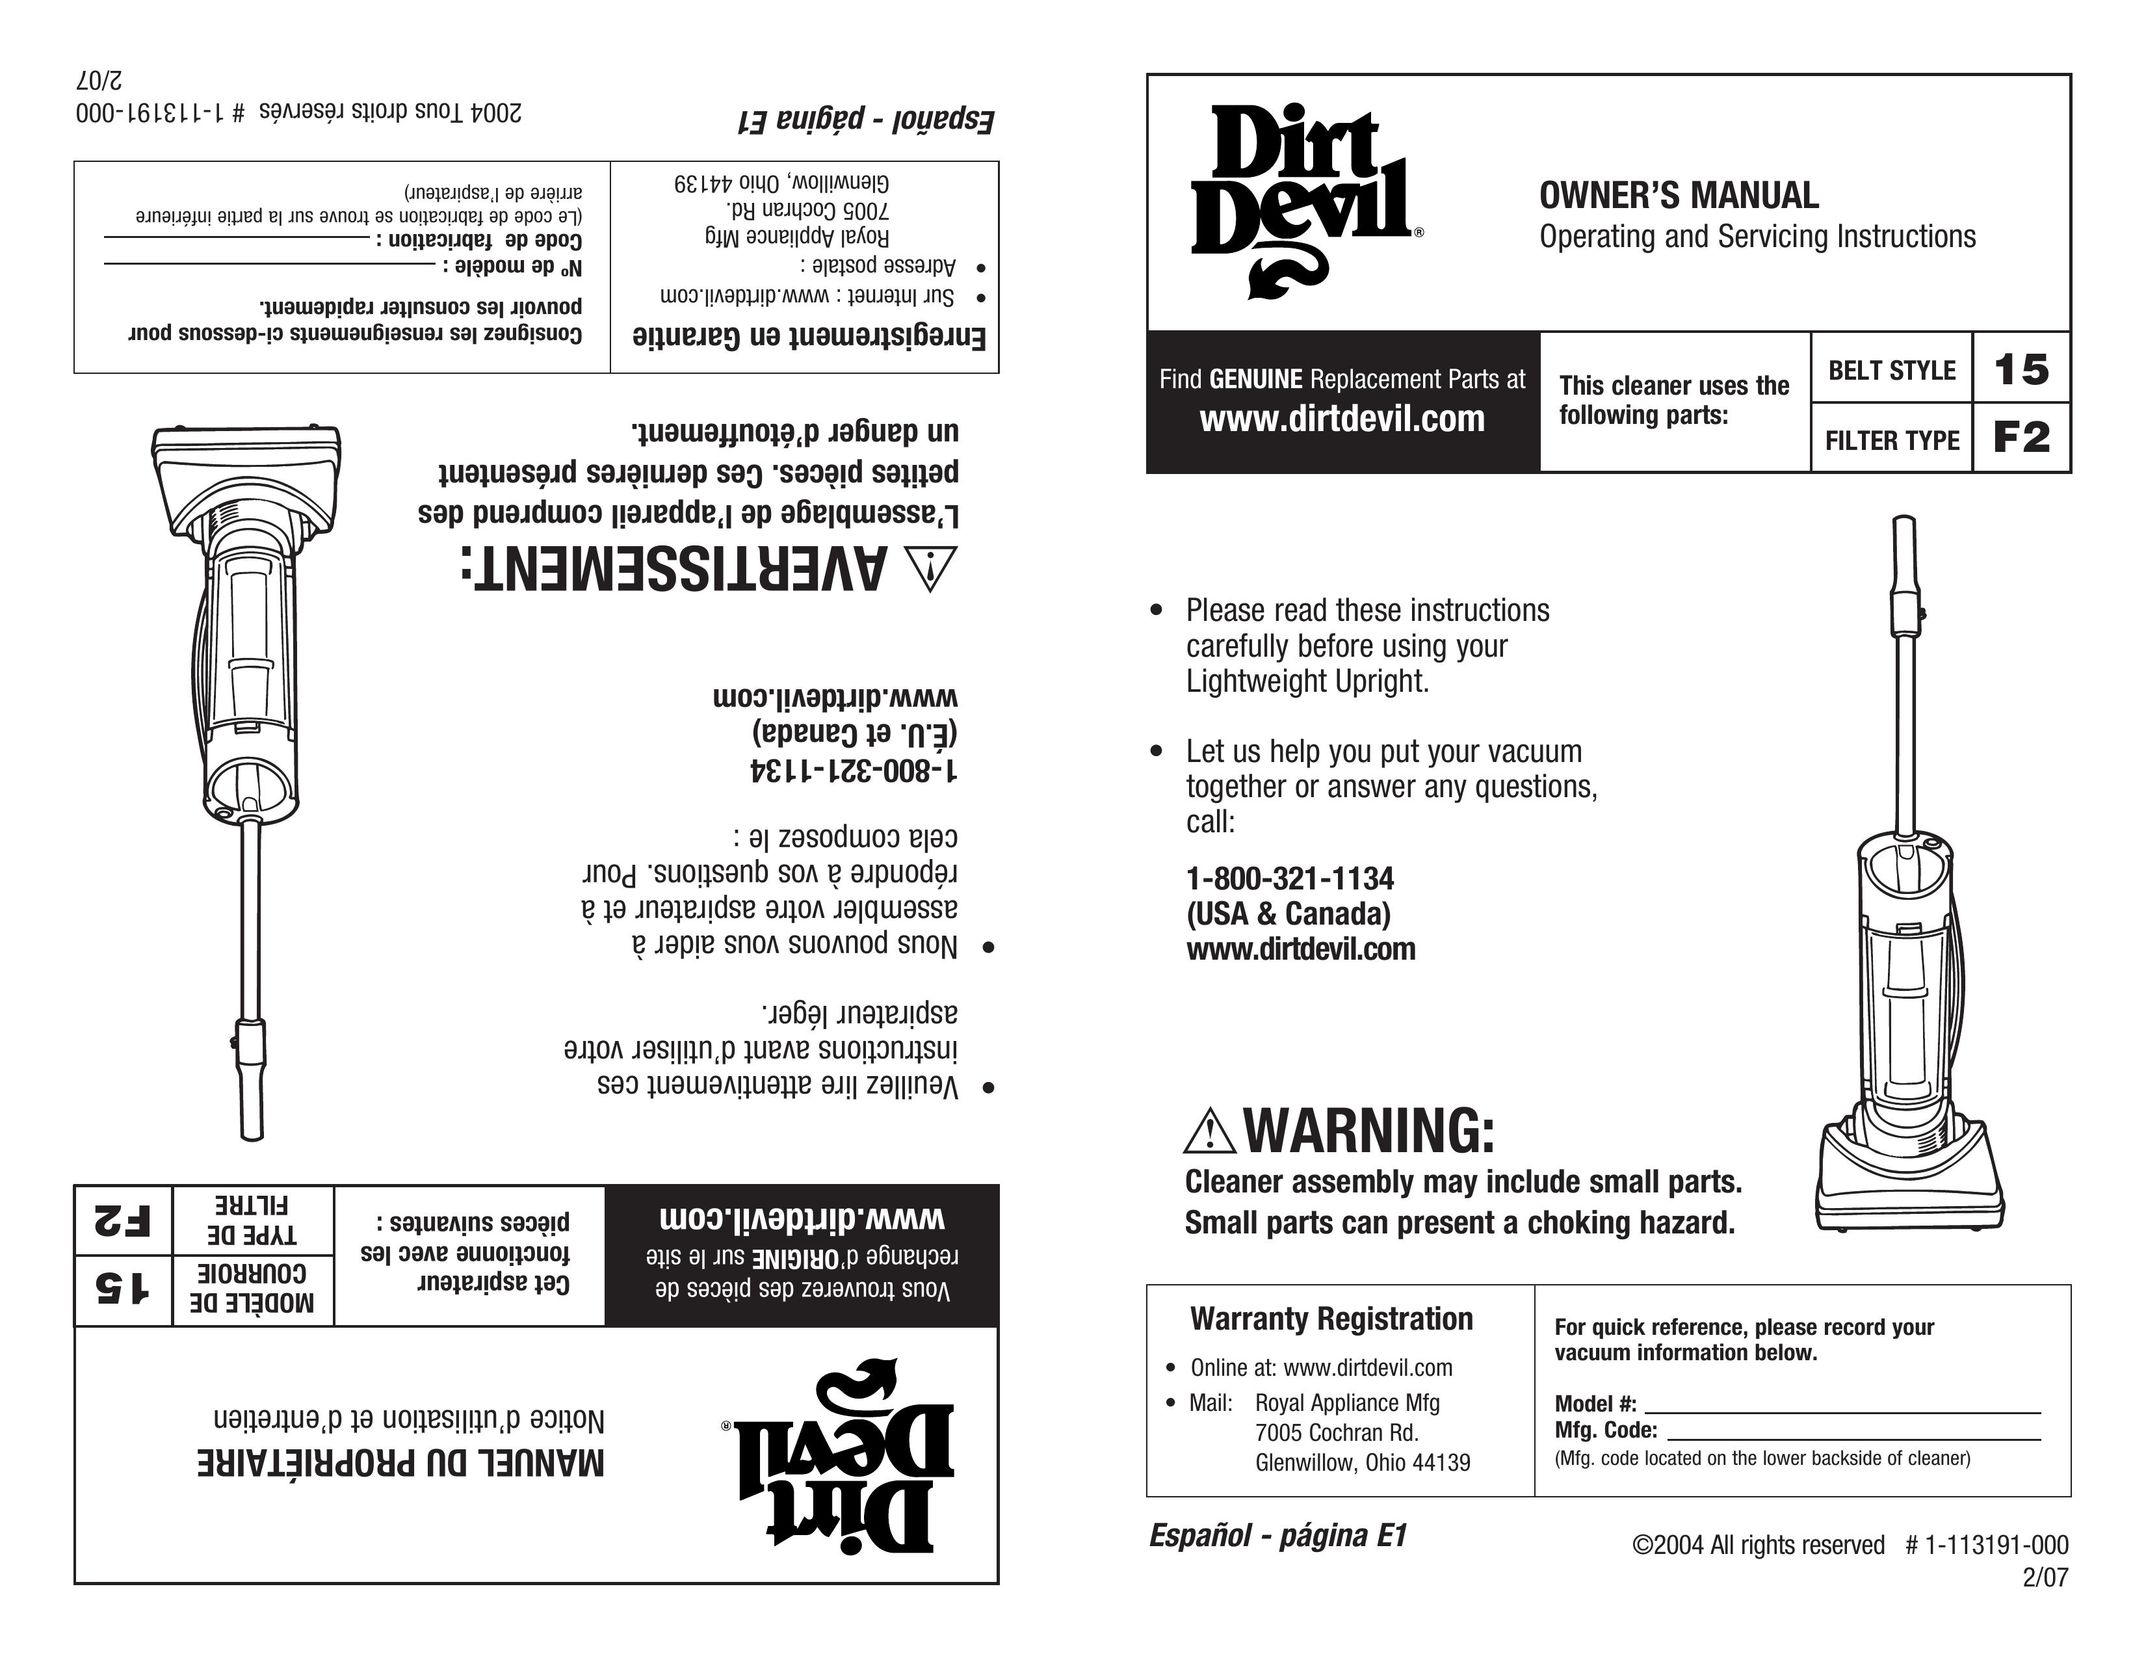 Dirt Devil 1-113191-000 Vacuum Cleaner User Manual